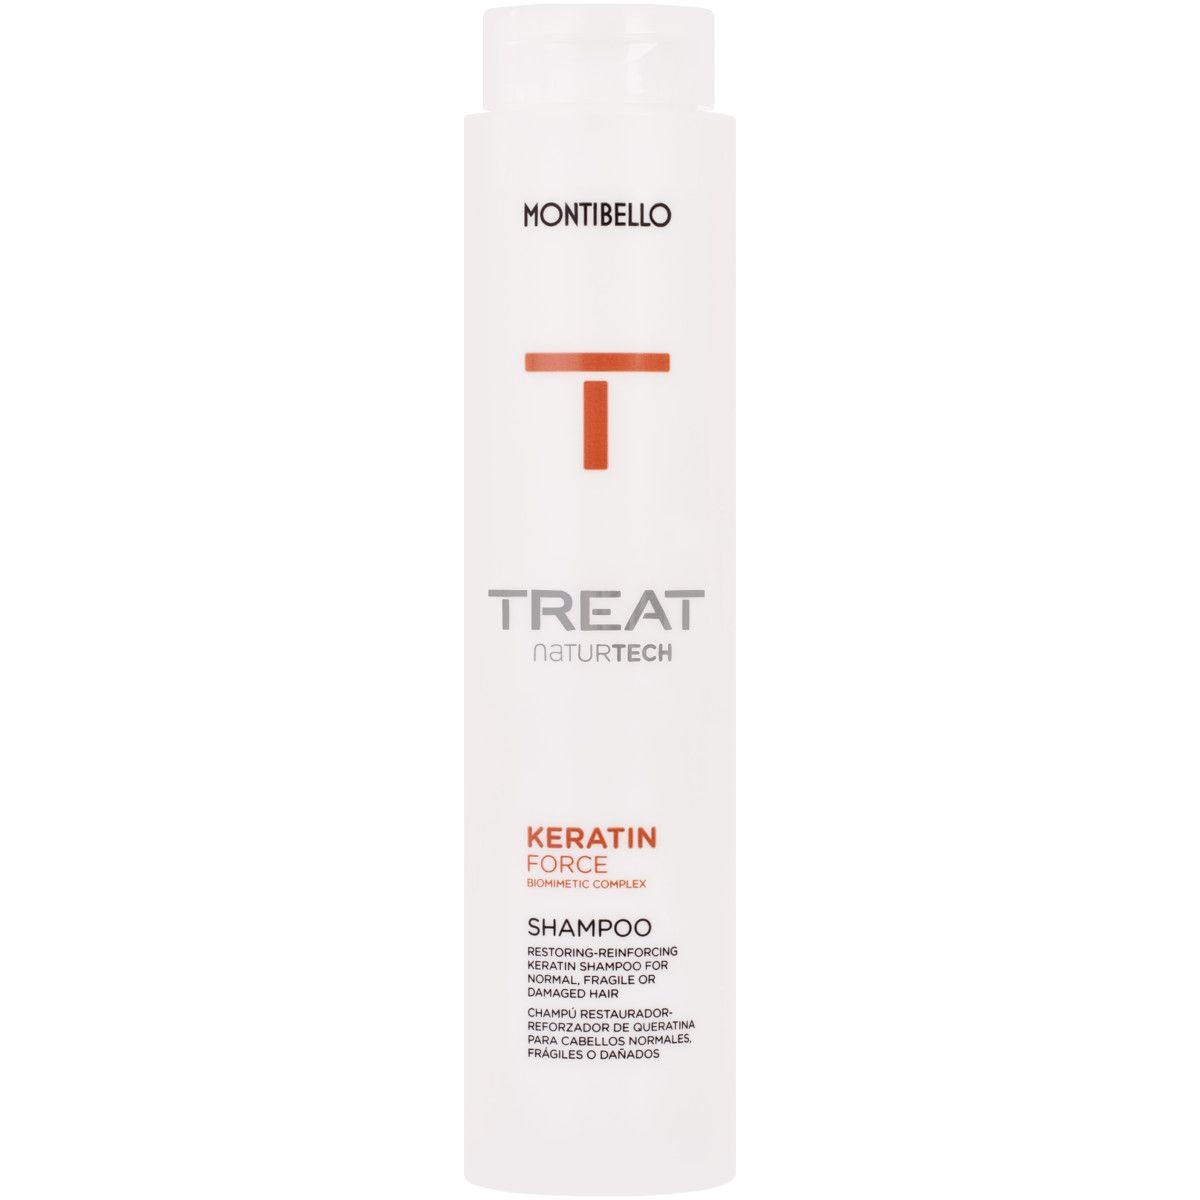 Montibello Keratin Force, szampon z proteinami do włosów zniszczonych 300ml